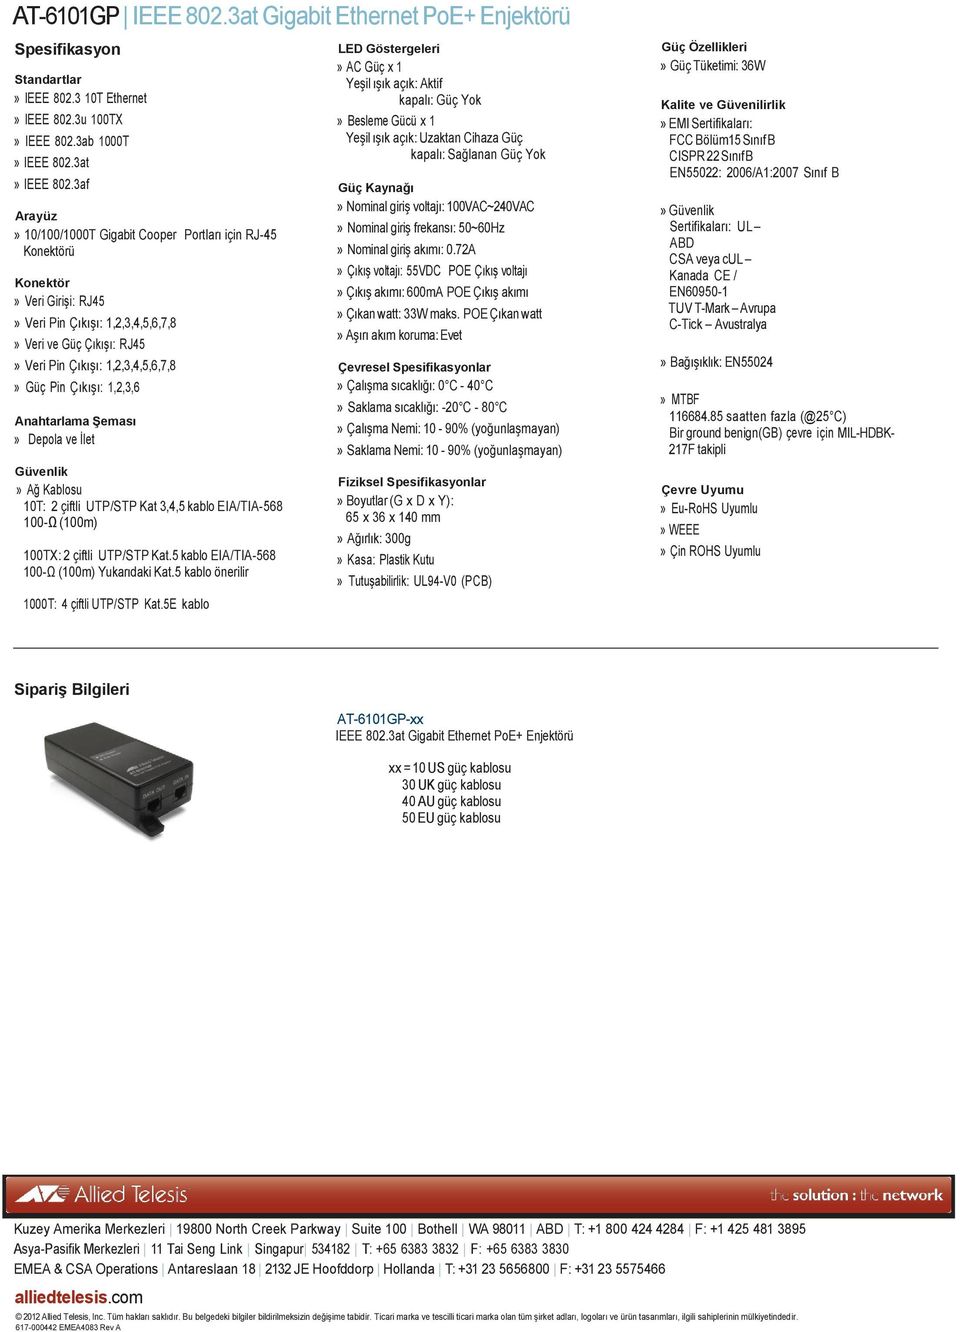 Pin Çıkışı: 1,2,3,6 Anahtarlama Şeması» Depola ve İlet Güvenlik» Ağ Kablosu 10T: 2 çiftli UTP/STP Kat 3,4,5 kablo EIA/TIA-568 100-Ω (100m) 100TX: 2 çiftli UTP/STP Kat.